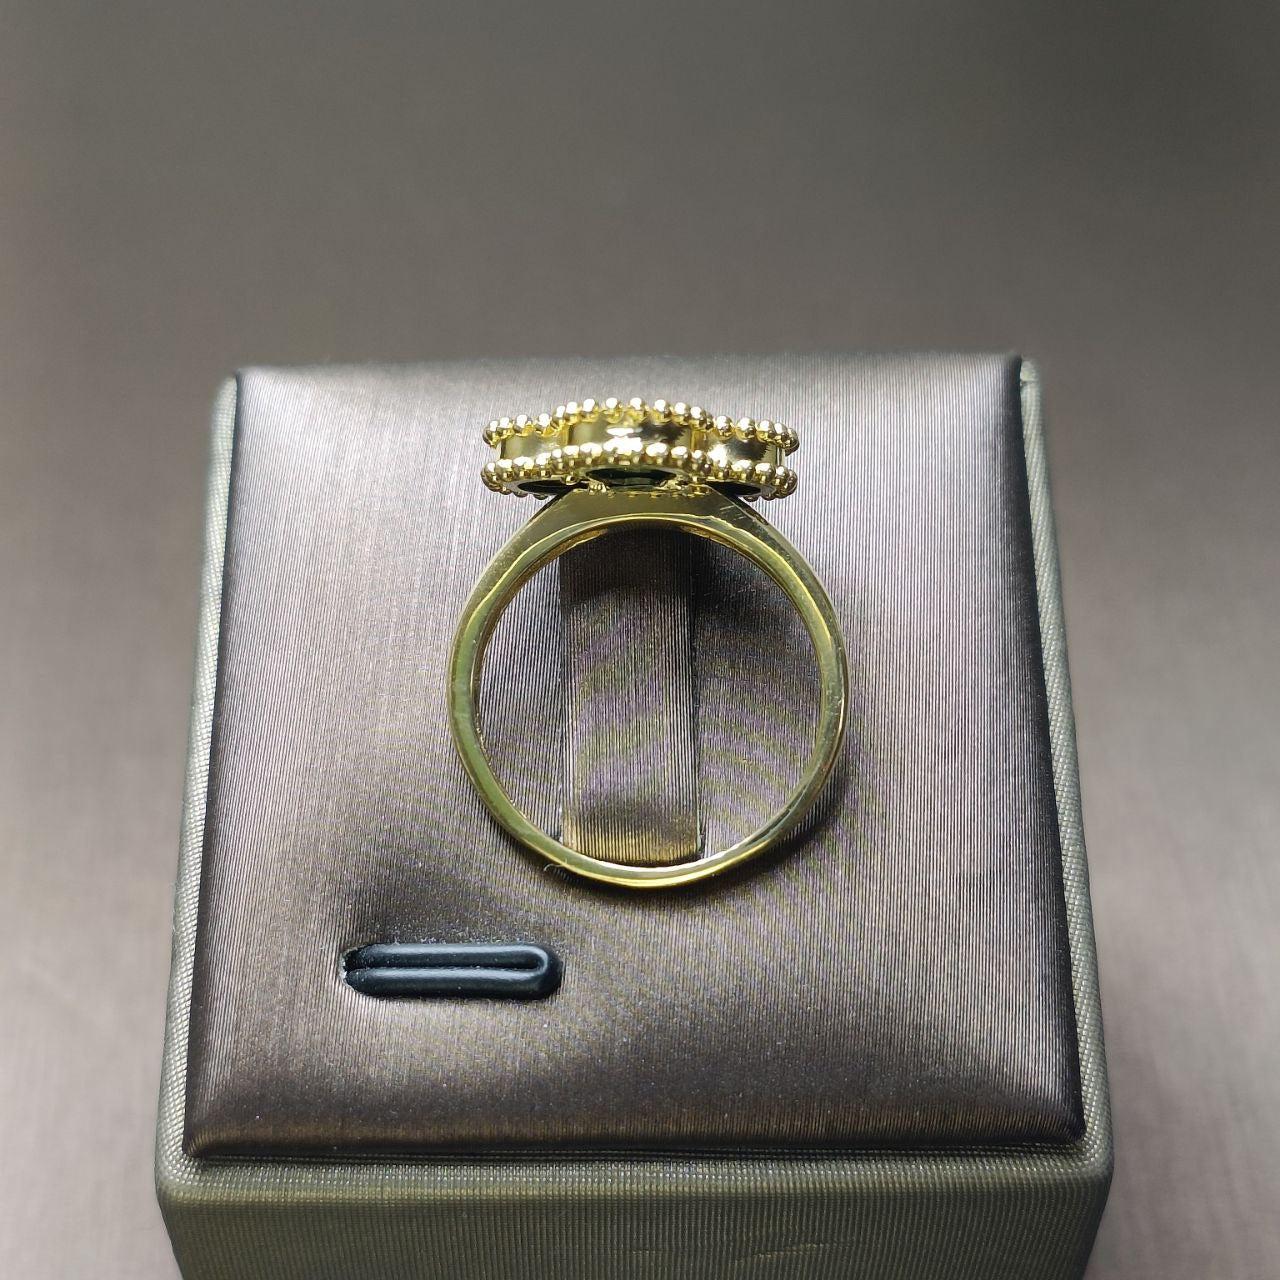 22K / 916 Gold Color Clover Ring-916 gold-Best Gold Shop